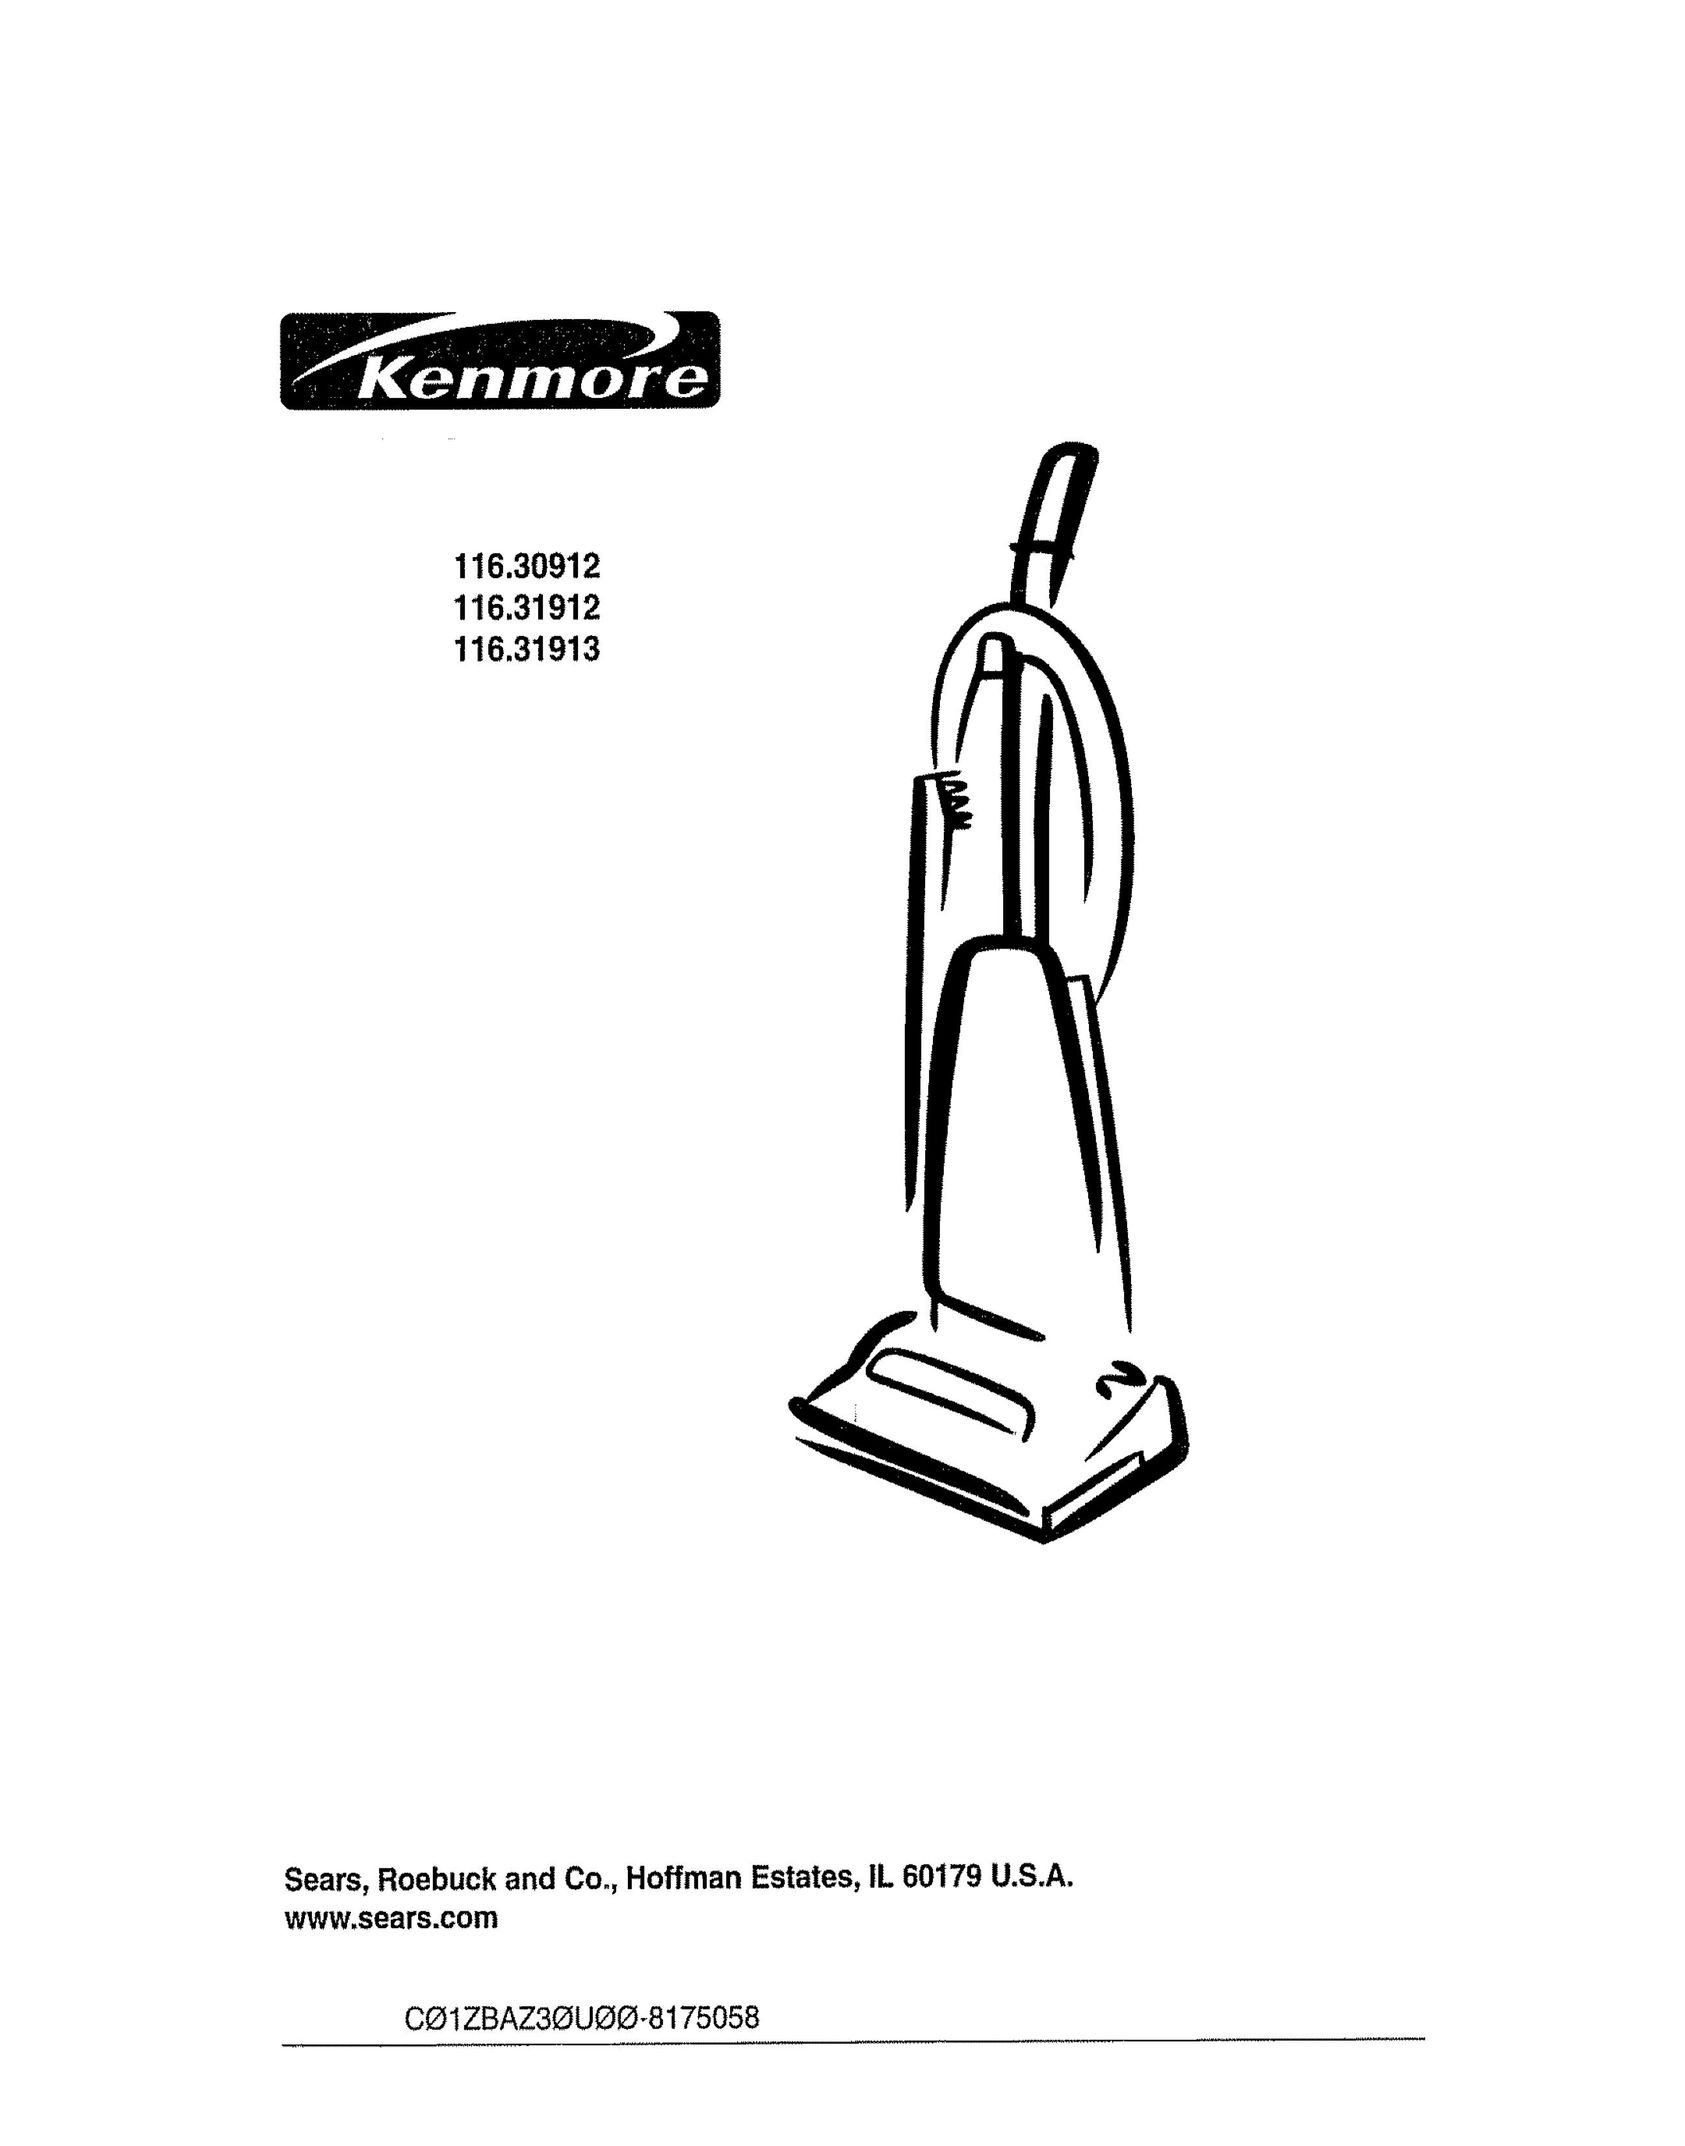 Kenmore 116.31913 Vacuum Cleaner User Manual